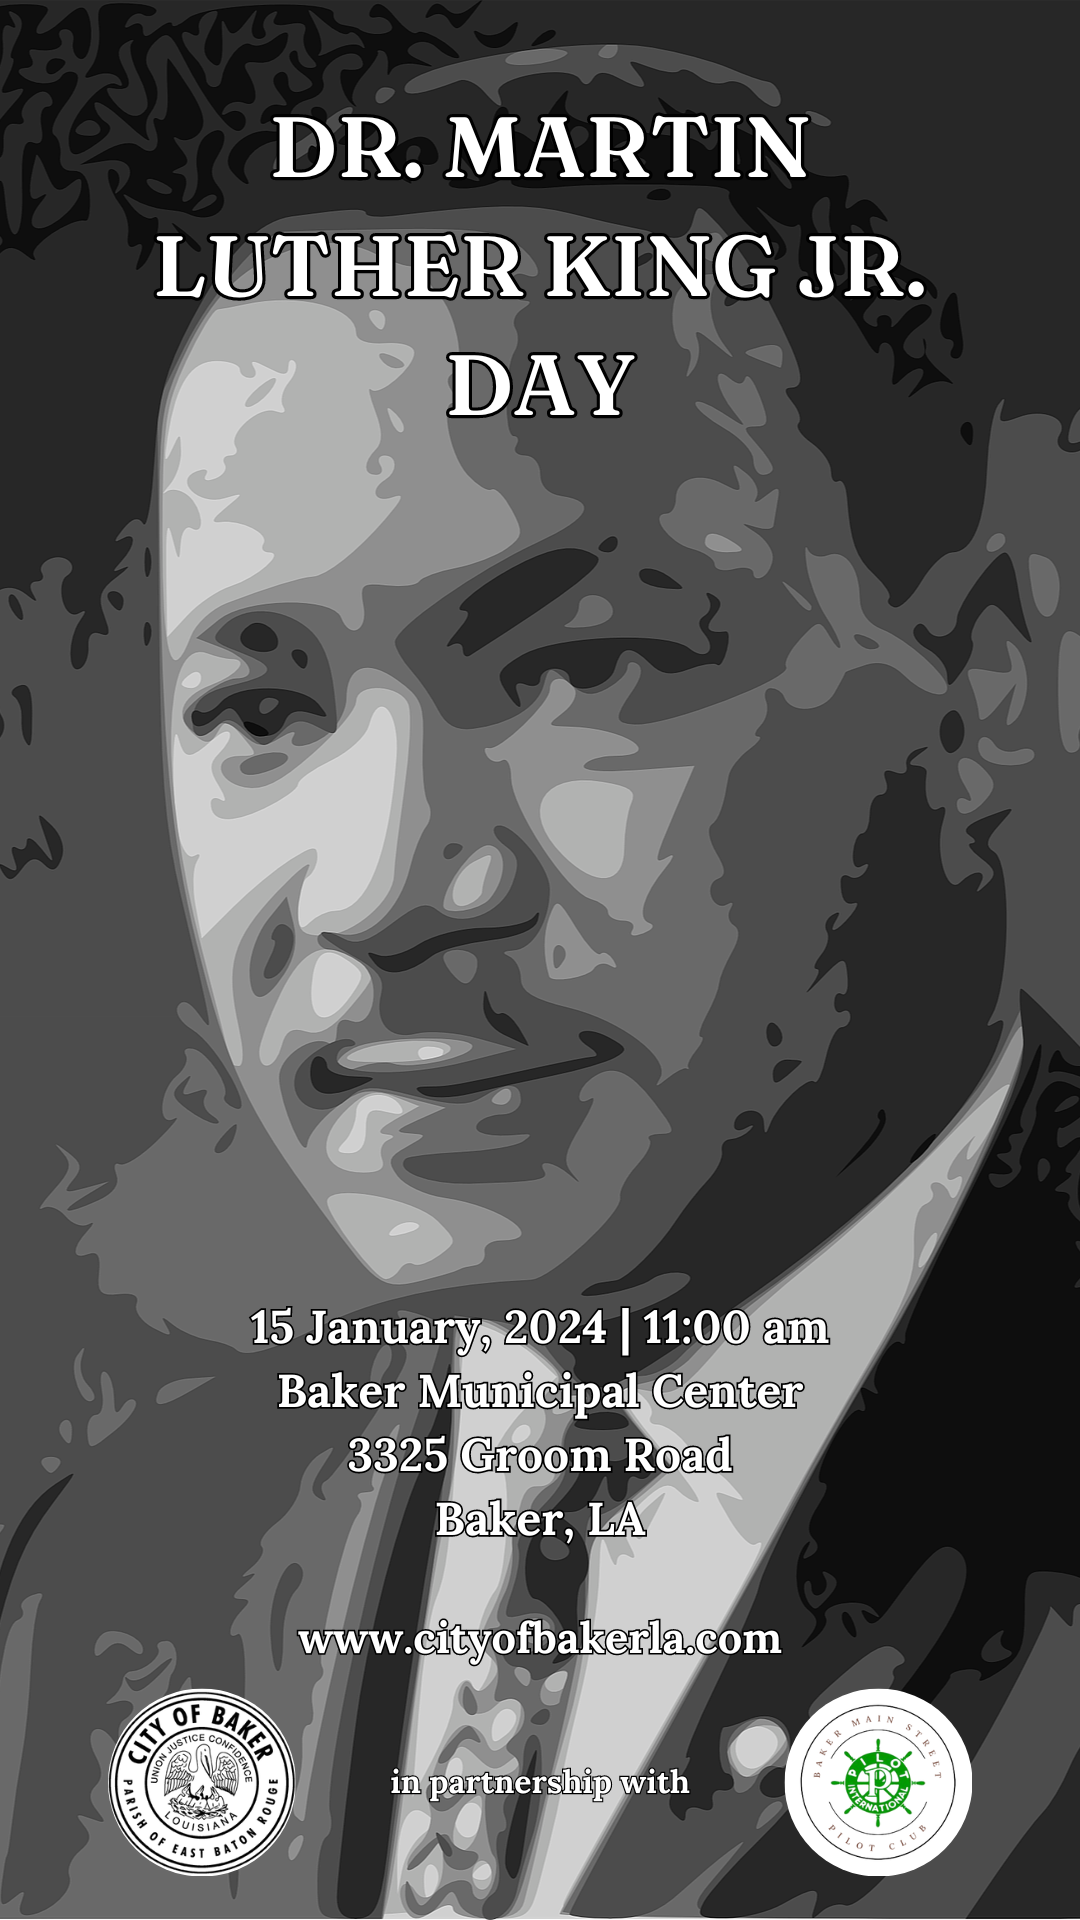 Mark Your Calendar! MLK Day Event at Baker Municipal Center January 15!